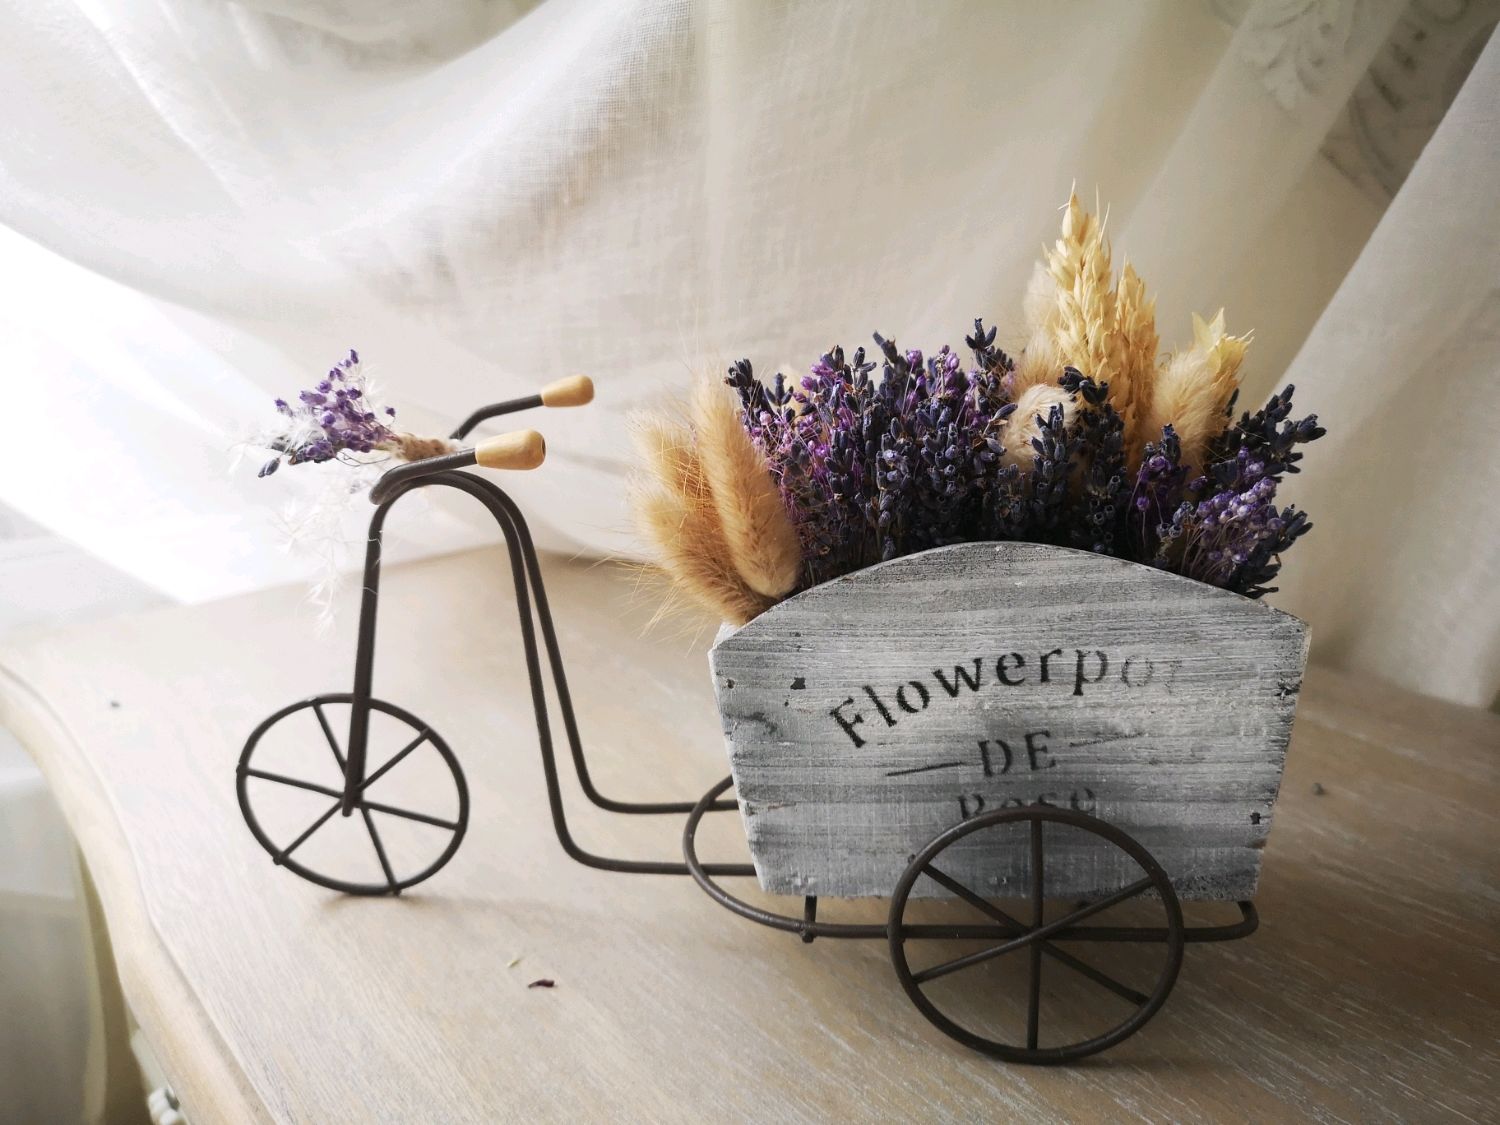 Декоративный велосипед для цветов